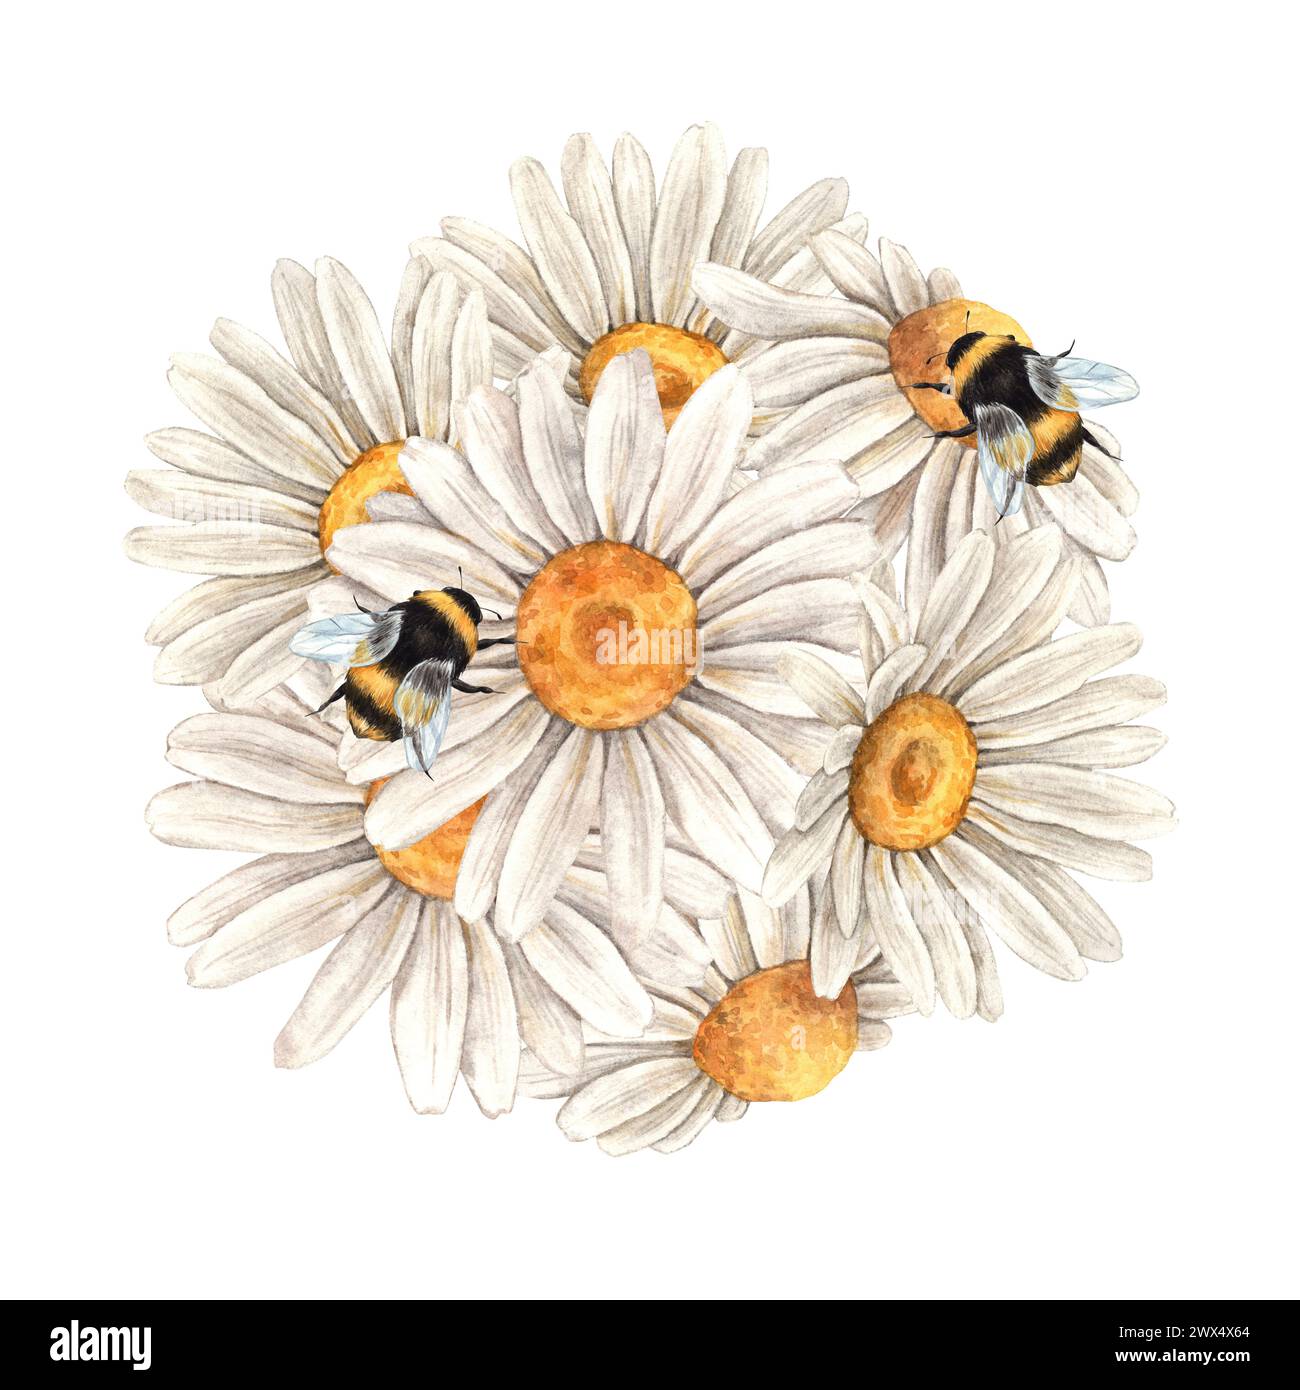 Aquarellflorale Komposition von Gänseblümchen mit Bienen. Abbildung ist handgezeichnet, geeignet für Menüdesign, Verpackung, Poster, Website, Textil, Stockfoto